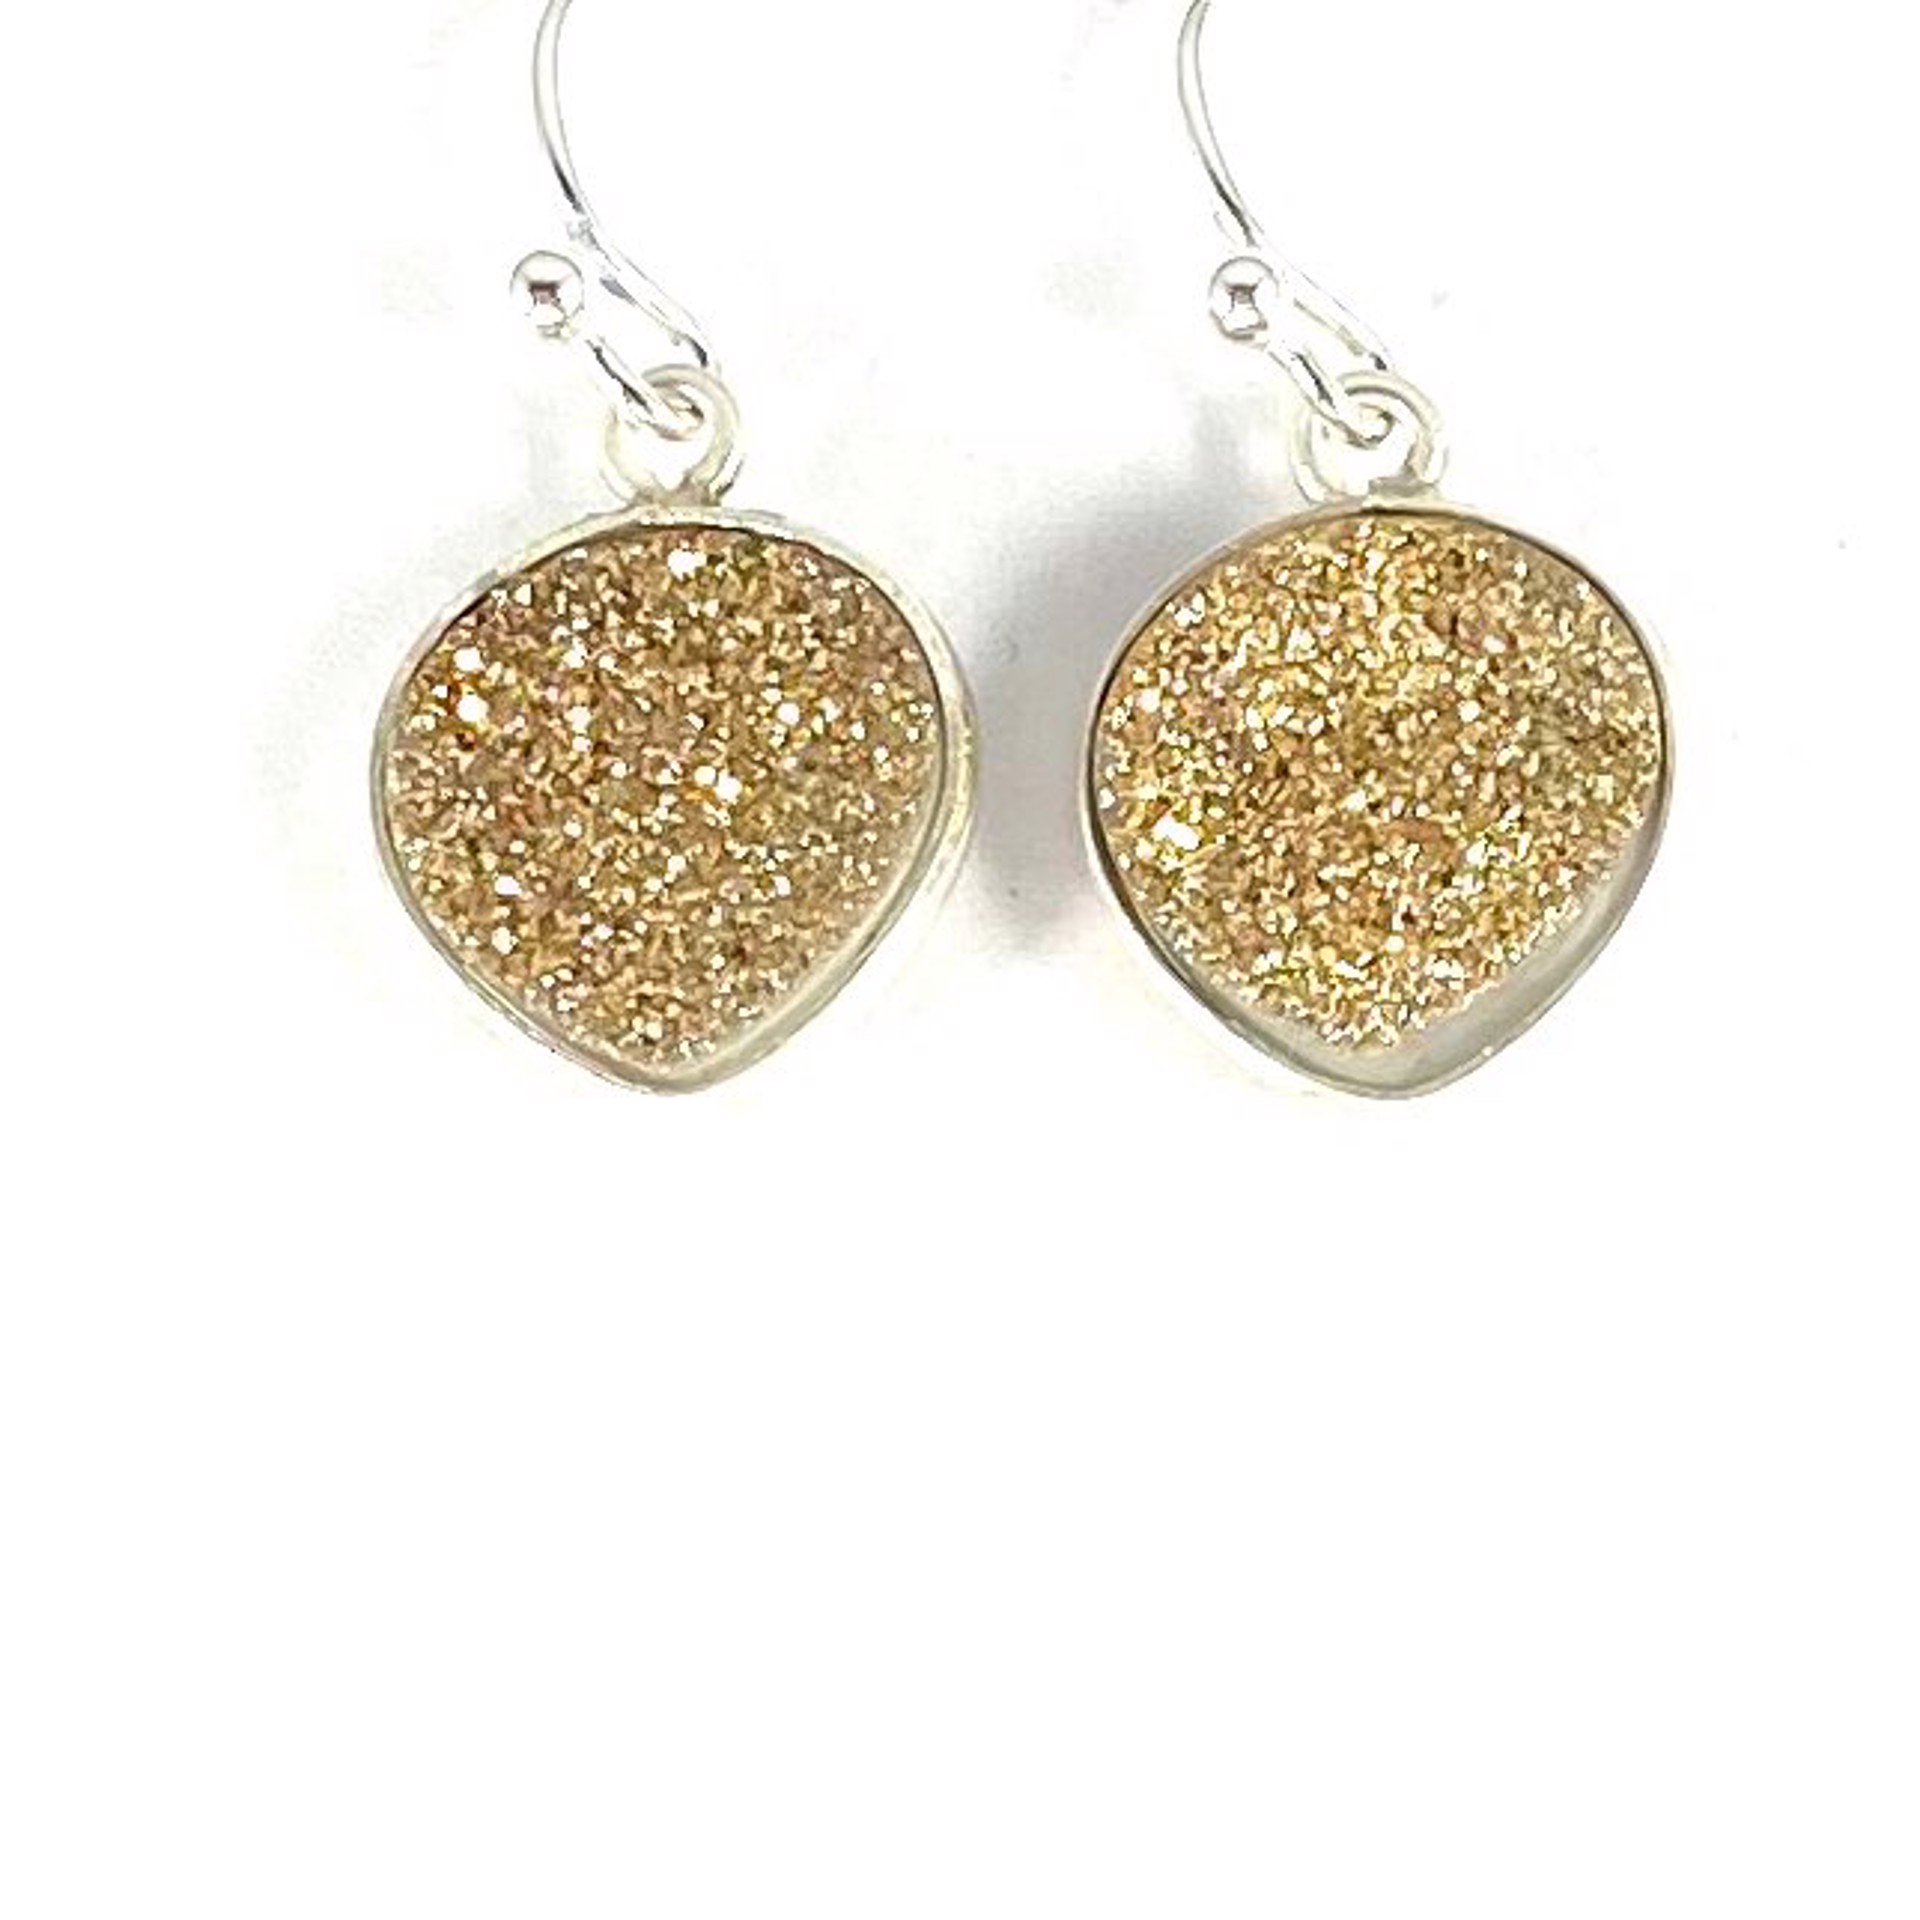 Heart Shaped Gold Druzy Earrings by Nance Trueworthy